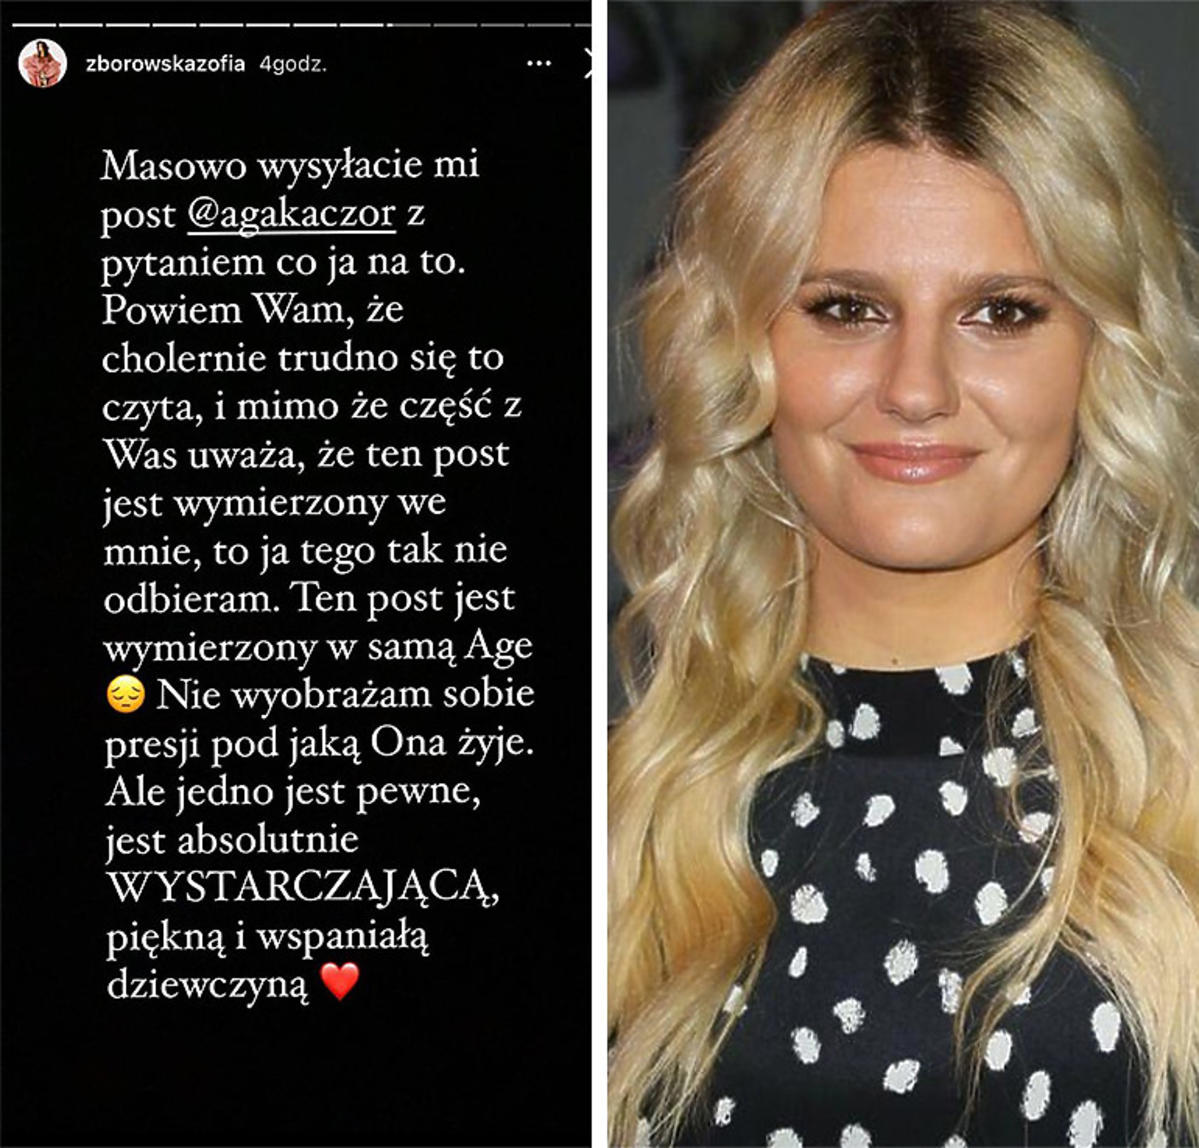 Zofia Zborowska komentuje post Agnieszki Kaczorowskiej o 